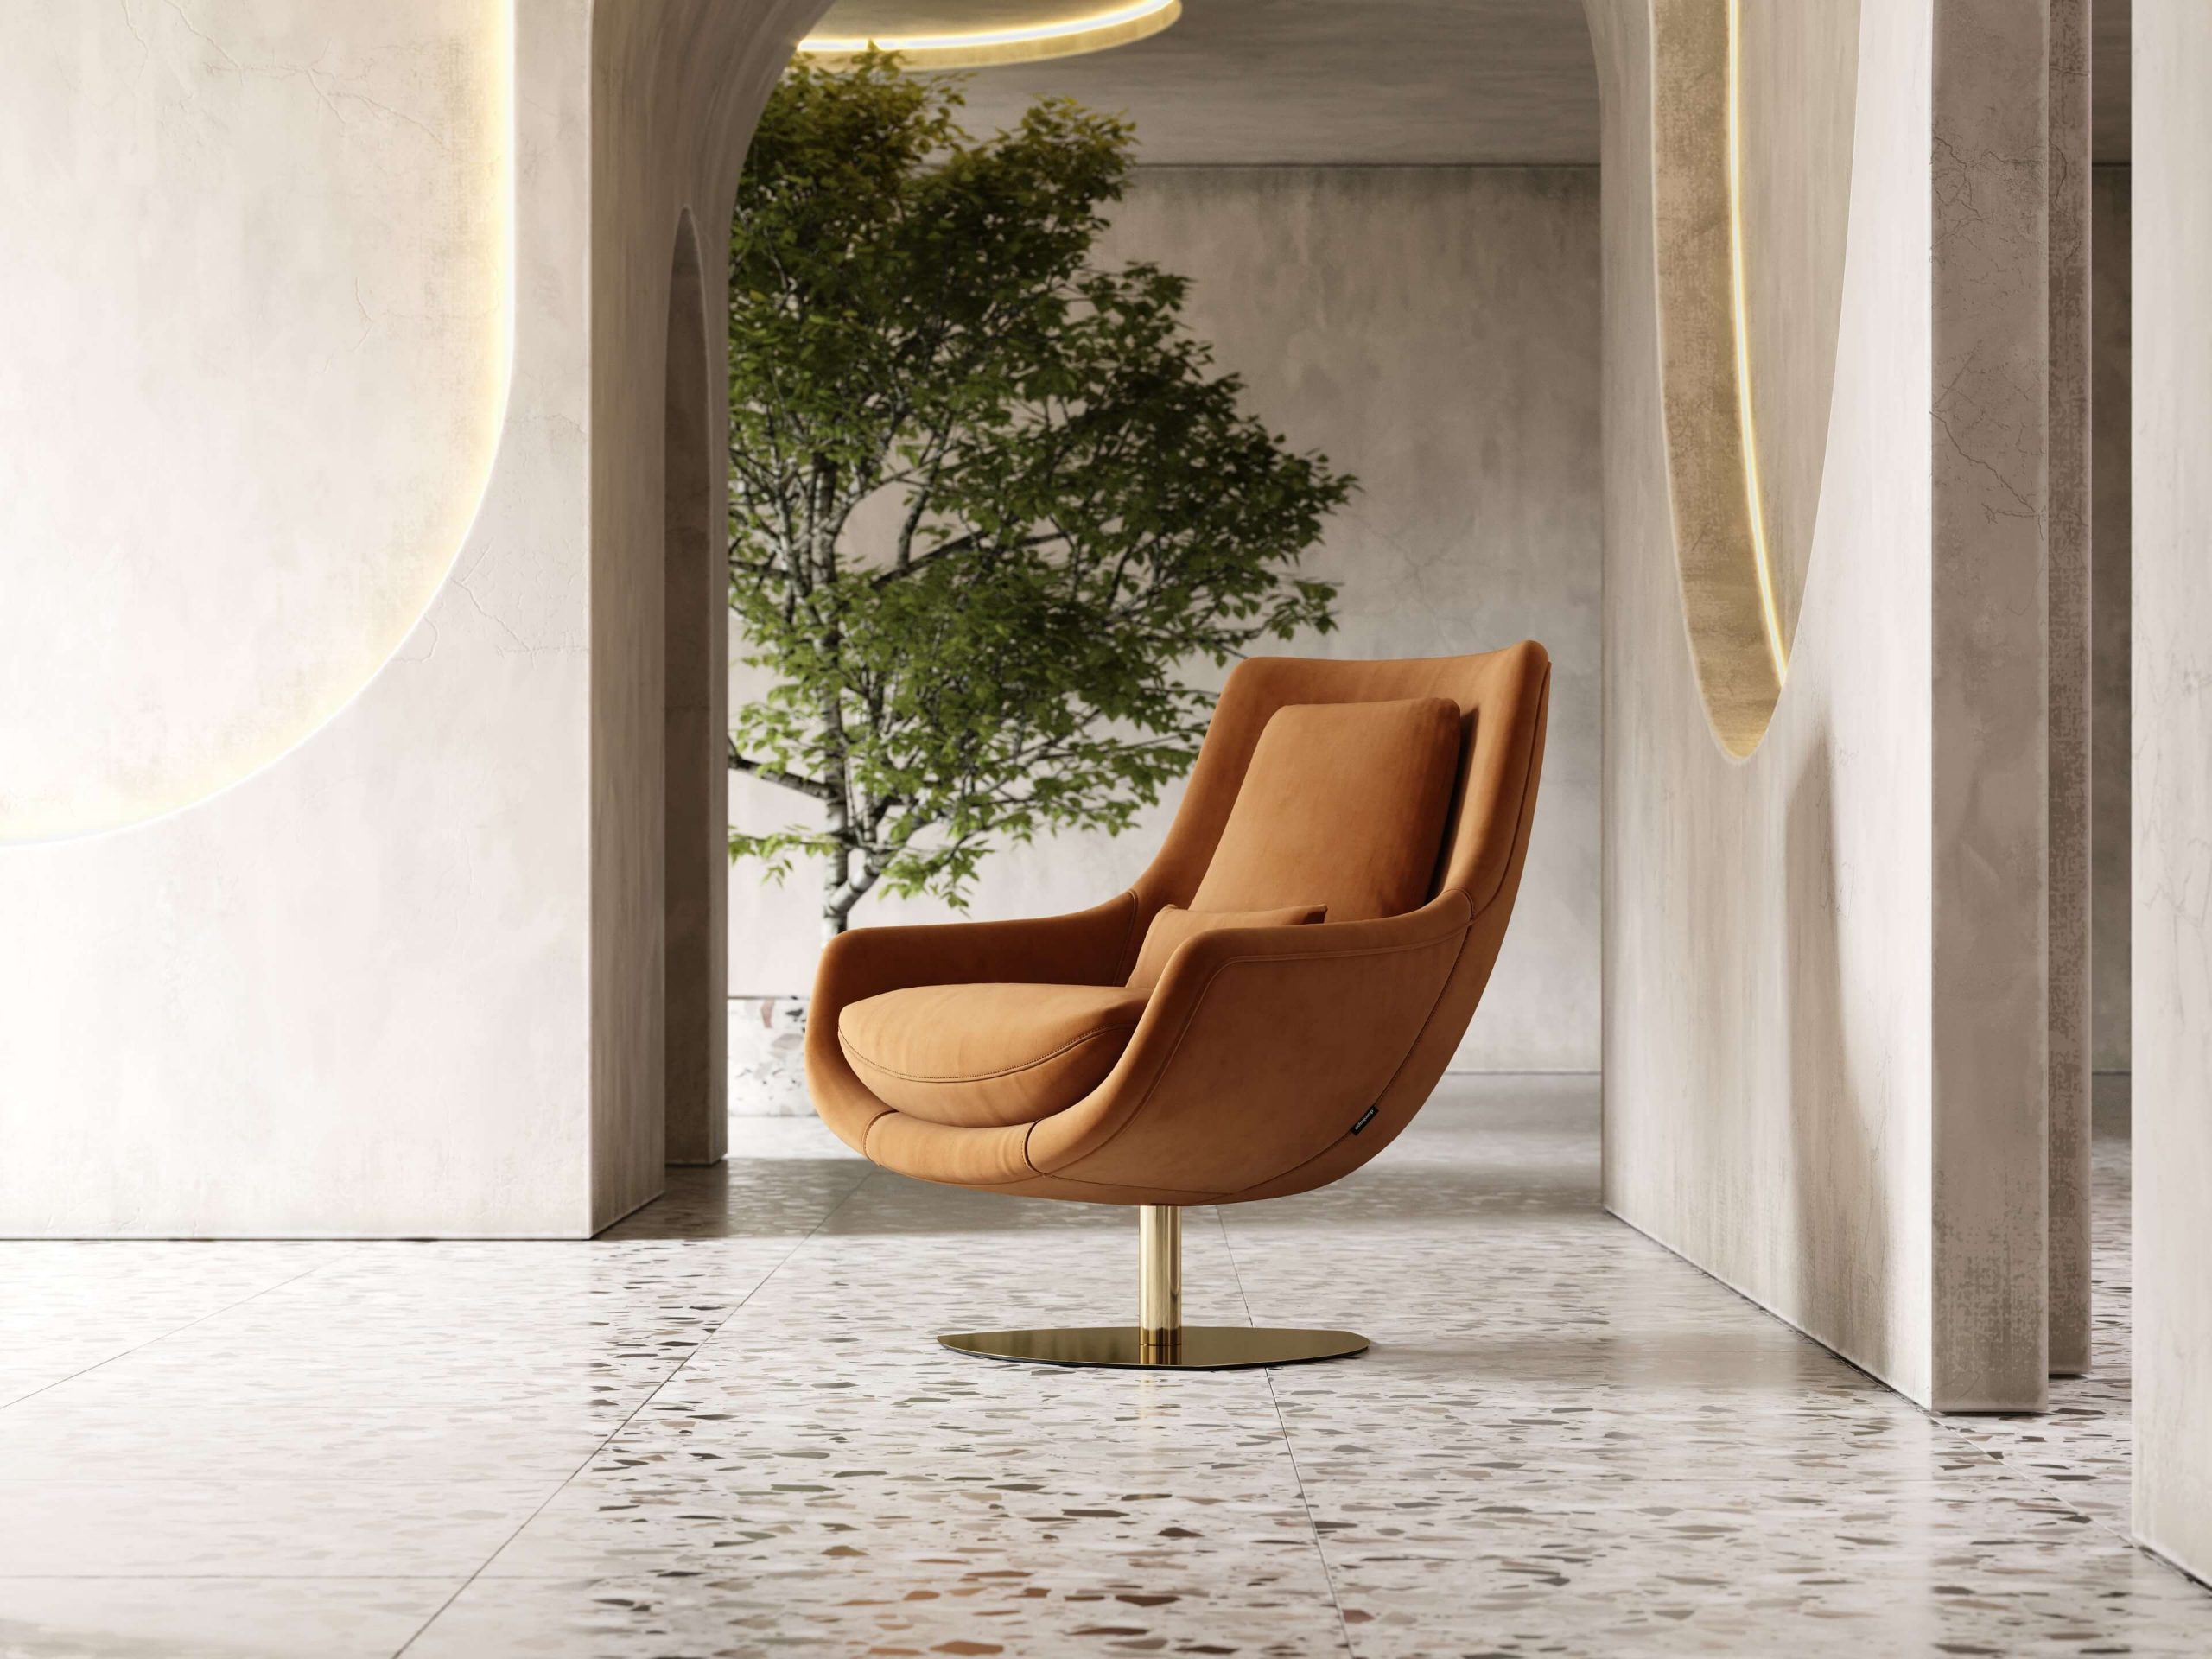 butaca-Elba-sillon-cotton-velvet-upholstered-furniture-living-room-interior-design-domkapa-Gold-stainless-steel-8